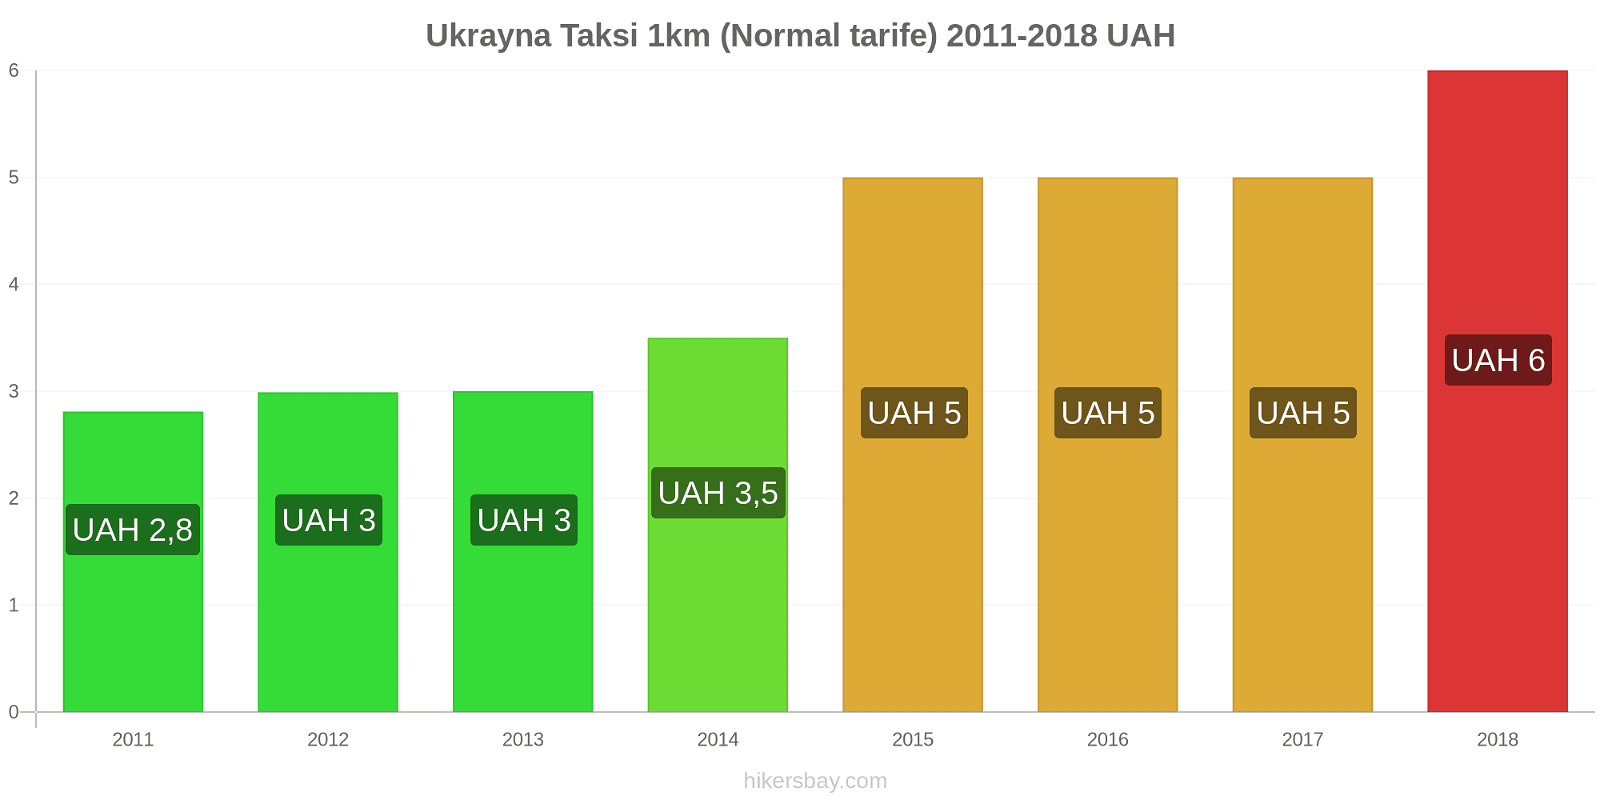 Ukrayna fiyat değişiklikleri Taksi 1km (Normal tarife) hikersbay.com